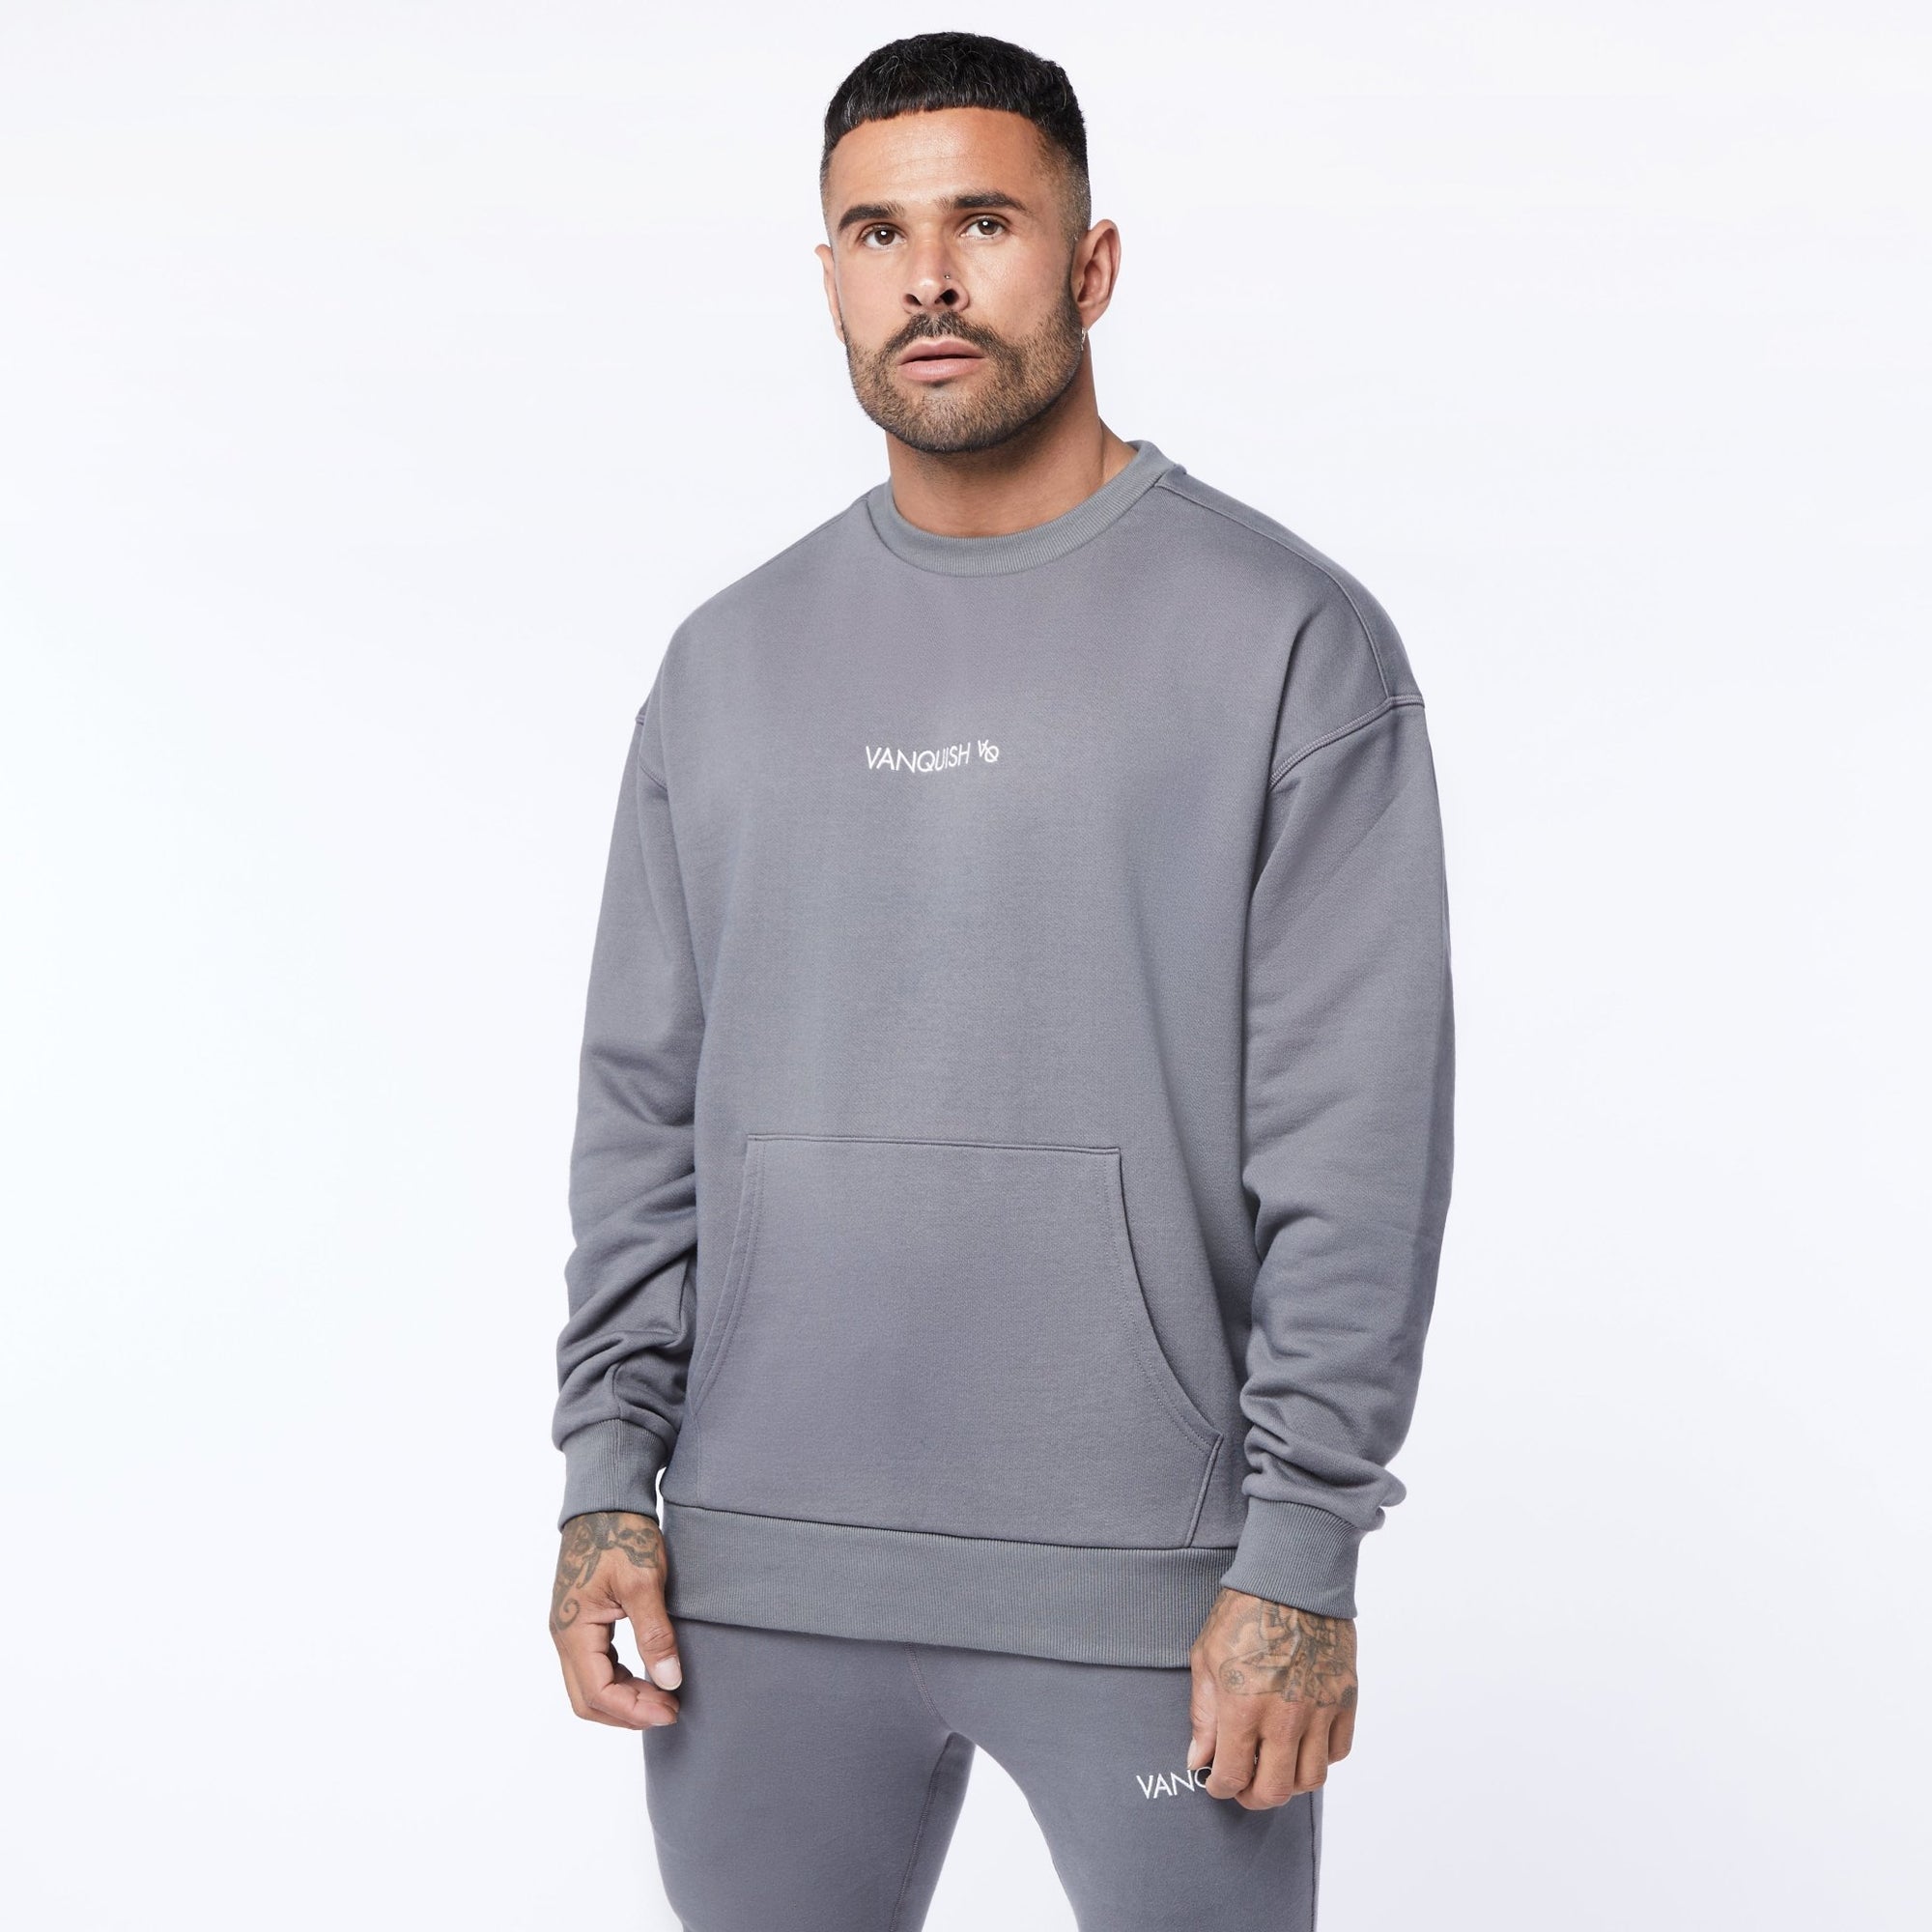 Vanquish Core Grey Oversized Sweater - Vanquish Fitness